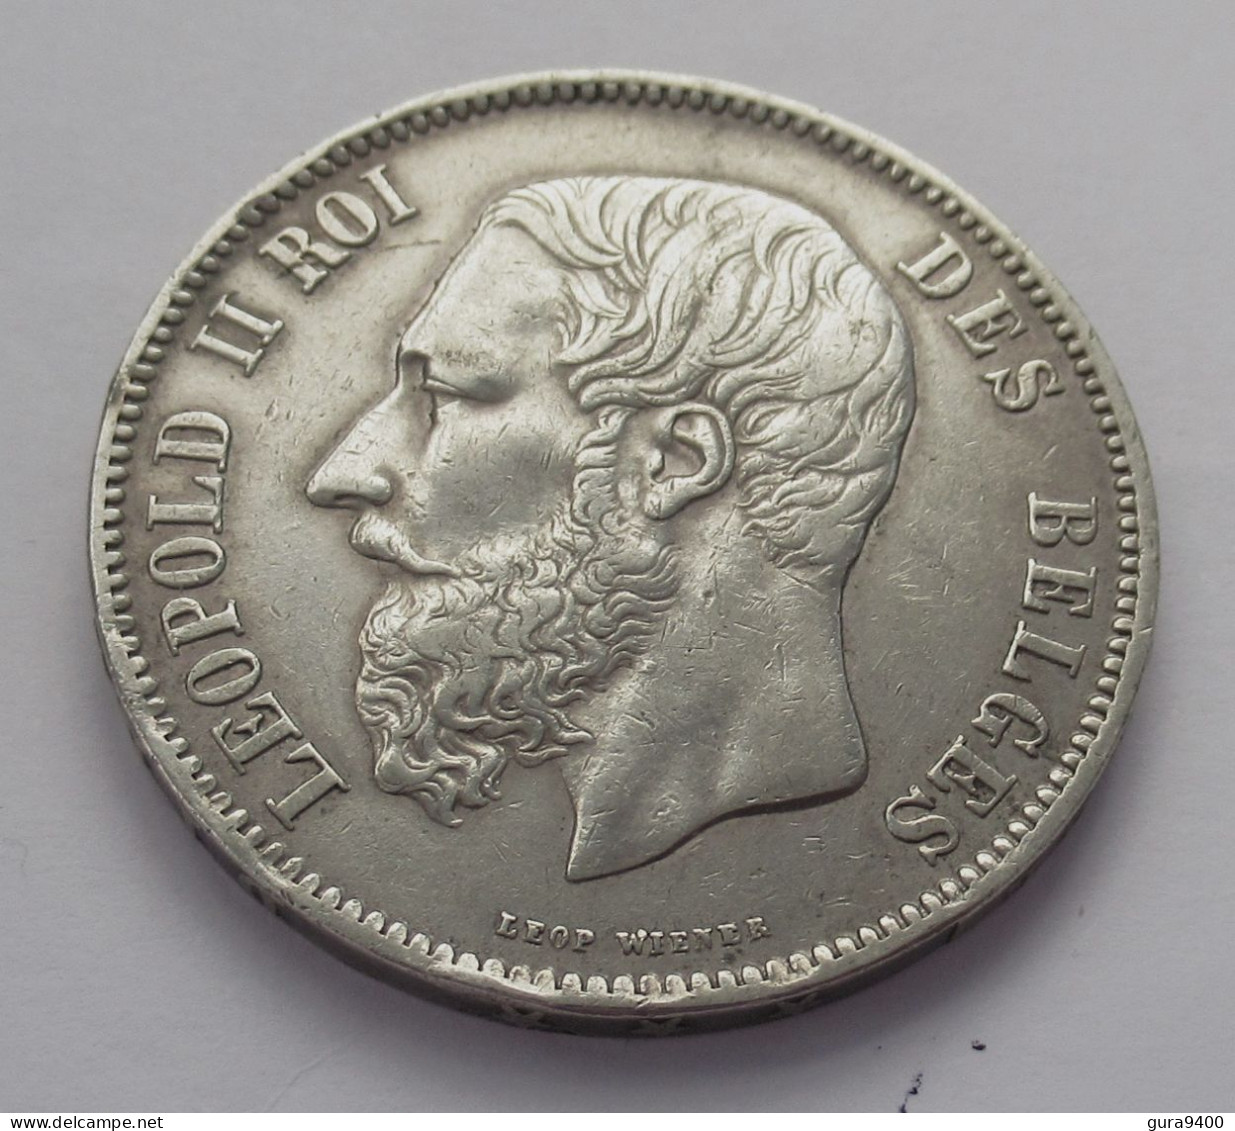 Belgique 5 Francs 1865 Leop II !! - 5 Francs